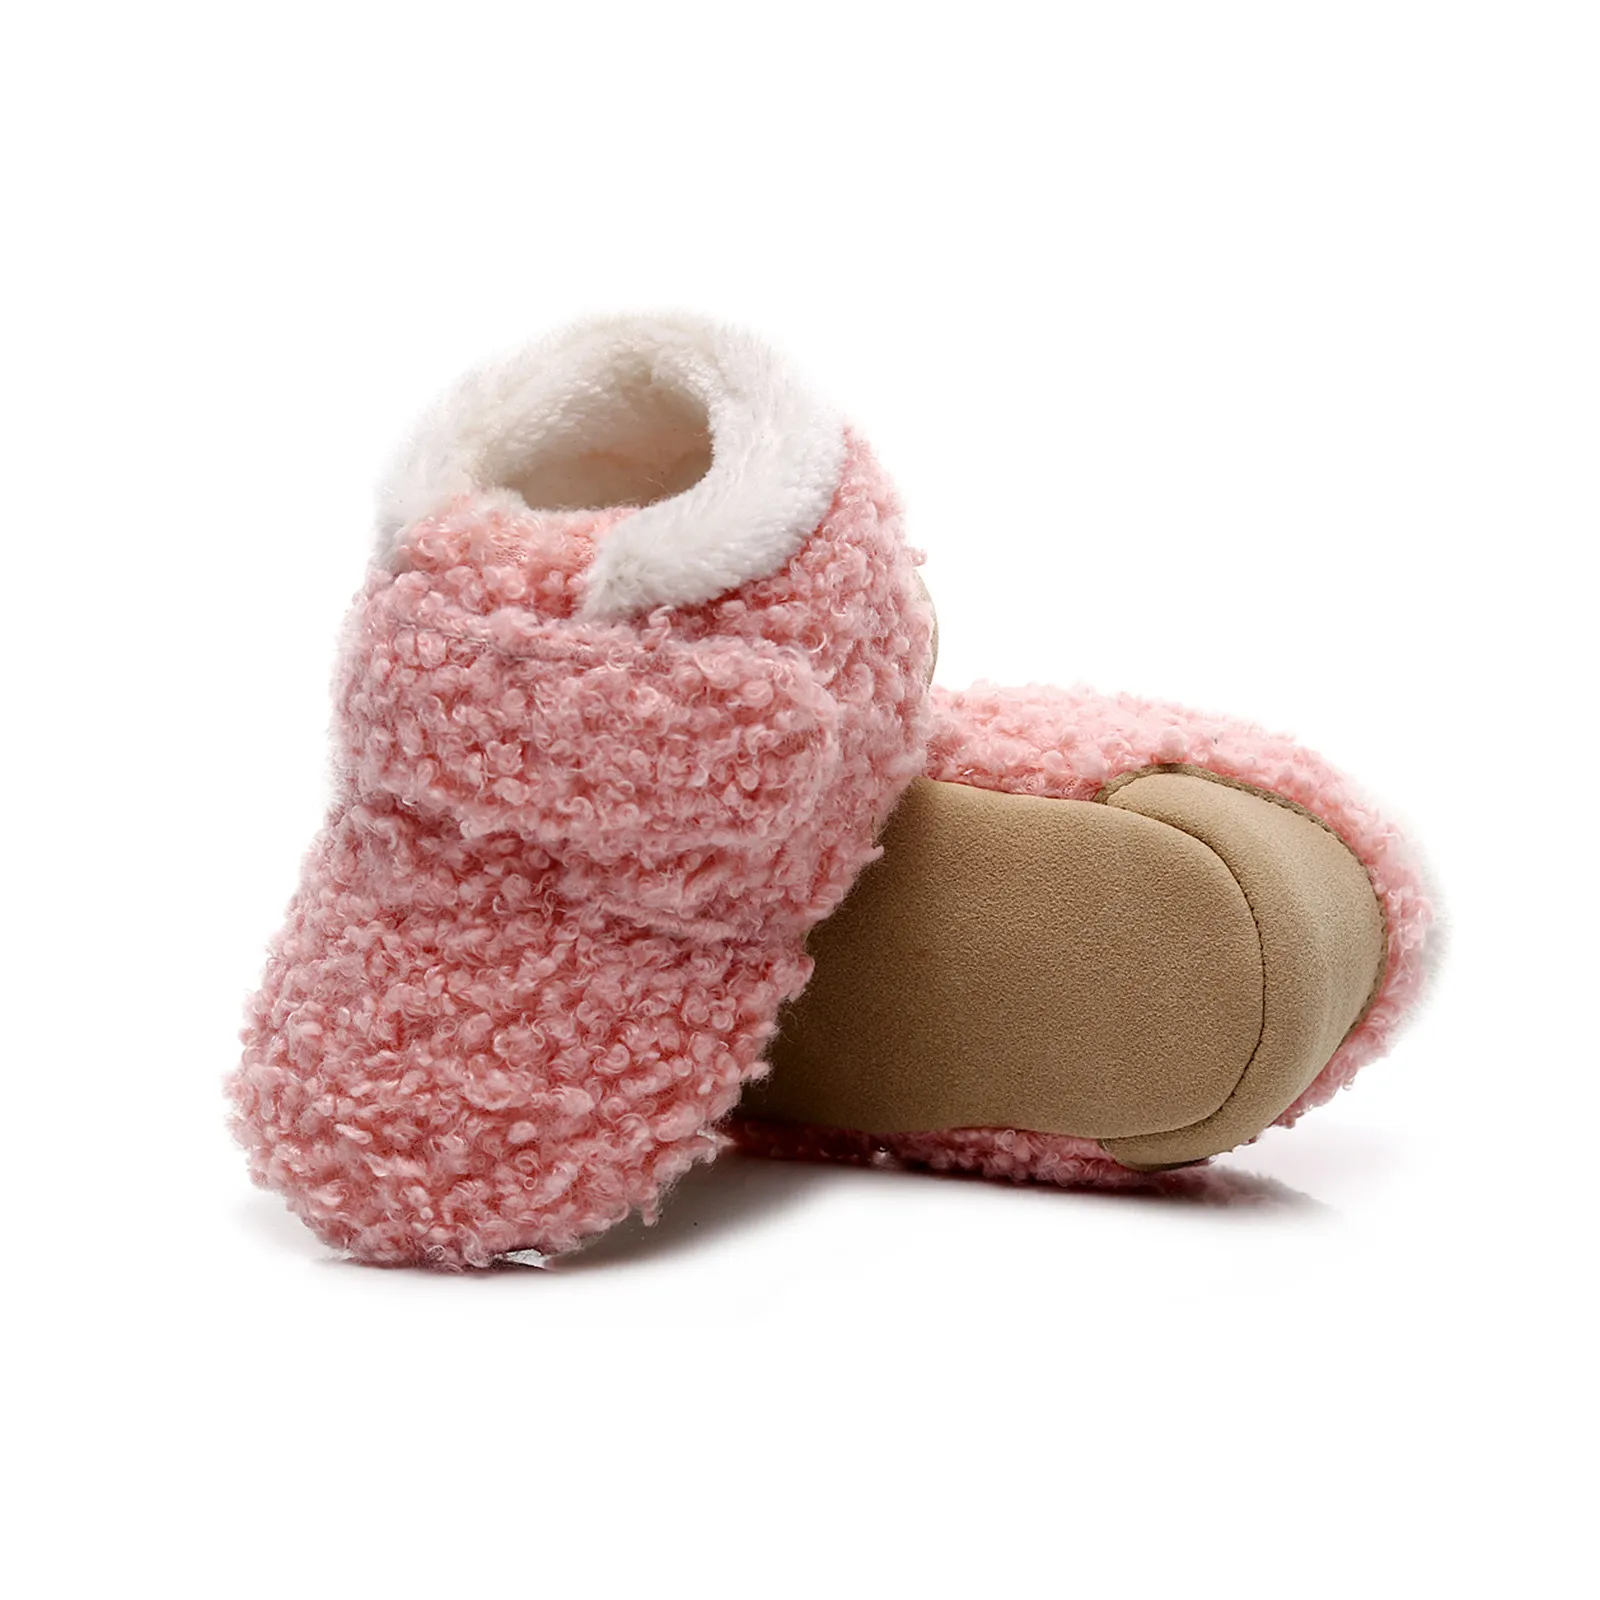 Tanio Chłopiec bucik dziecięcy pierwszy h niemowlę śnieg dziewczyny buty